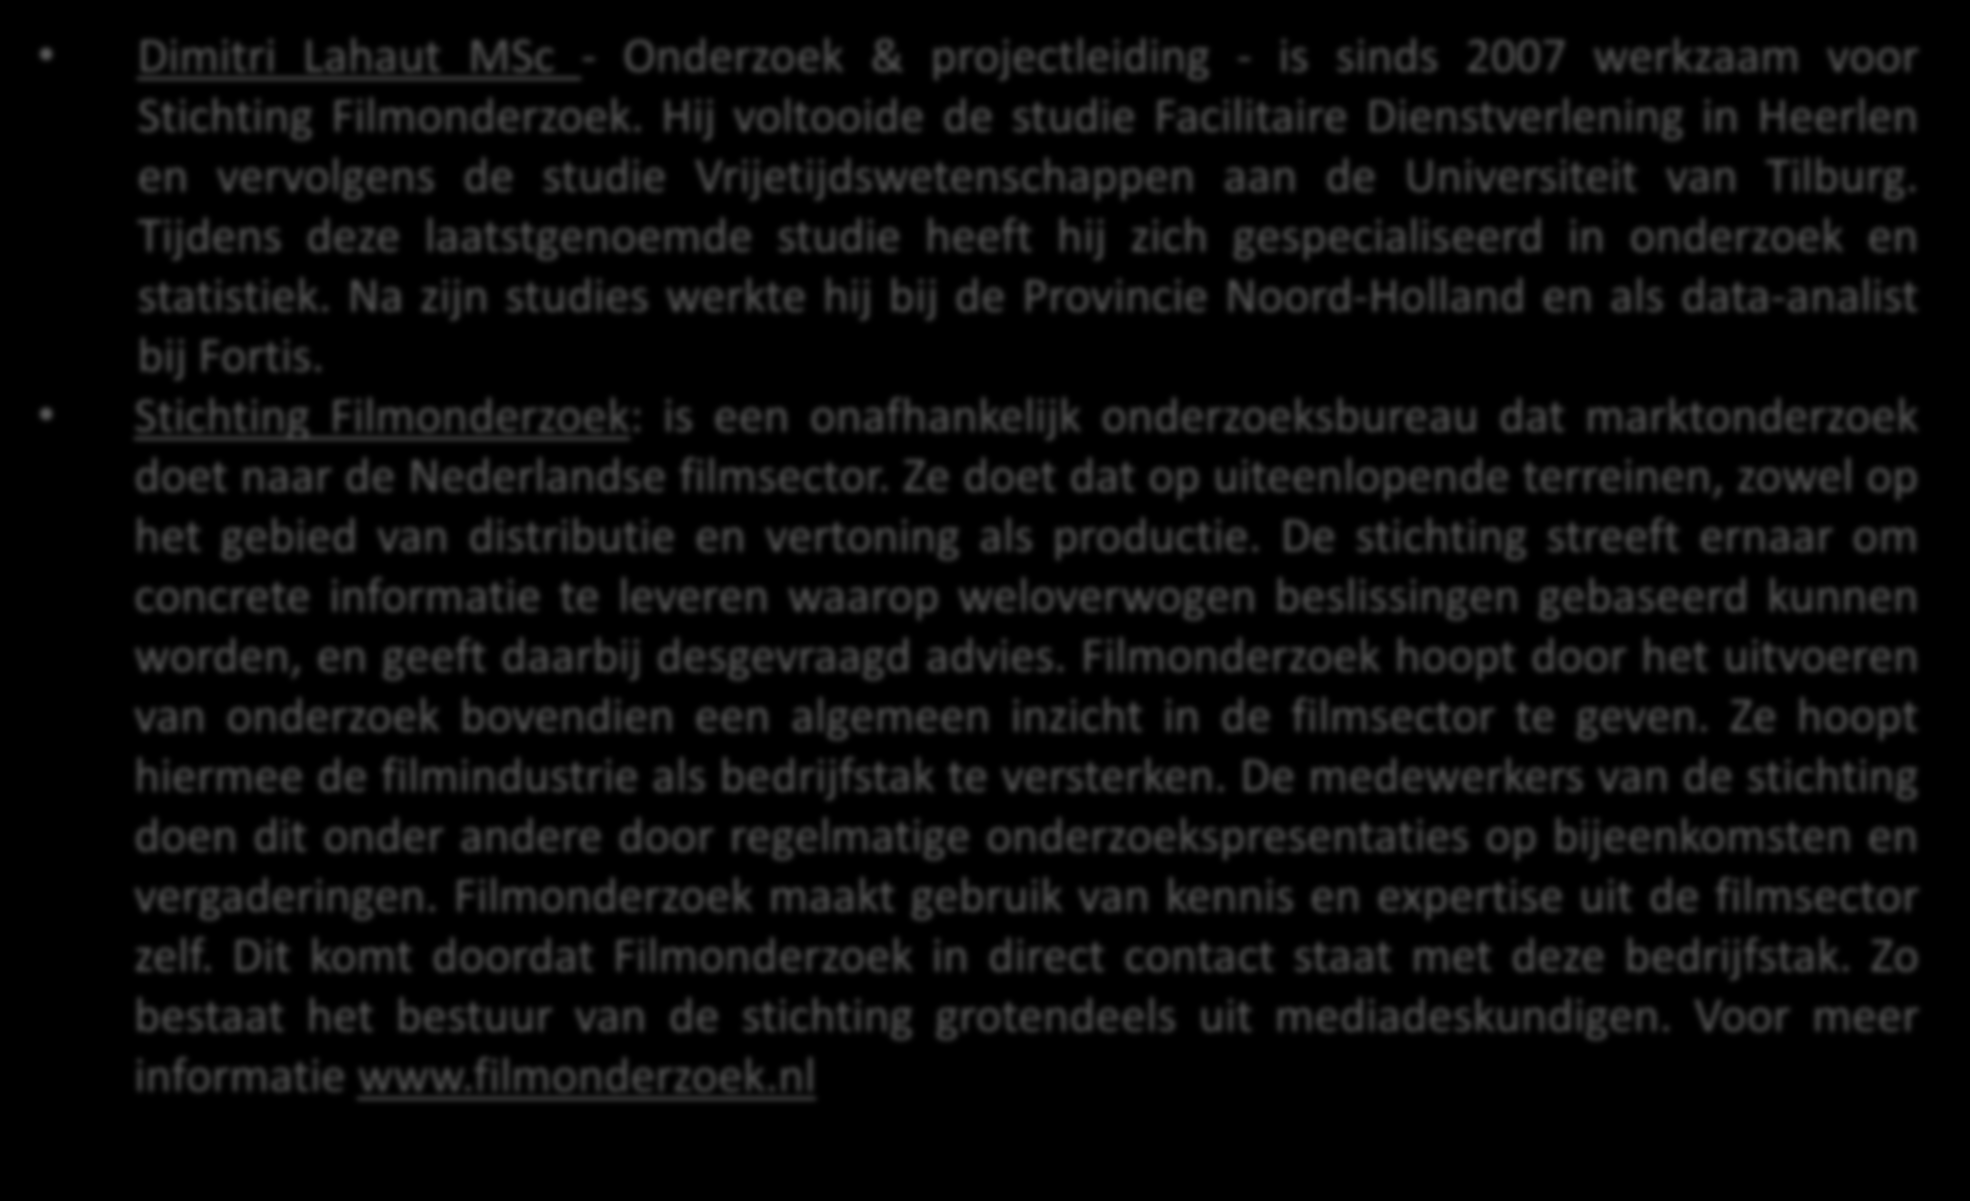 Over Stichting Filmonderzoek Dimitri Lahaut MSc - Onderzoek & projectleiding - is sinds 2007 werkzaam voor Stichting Filmonderzoek.